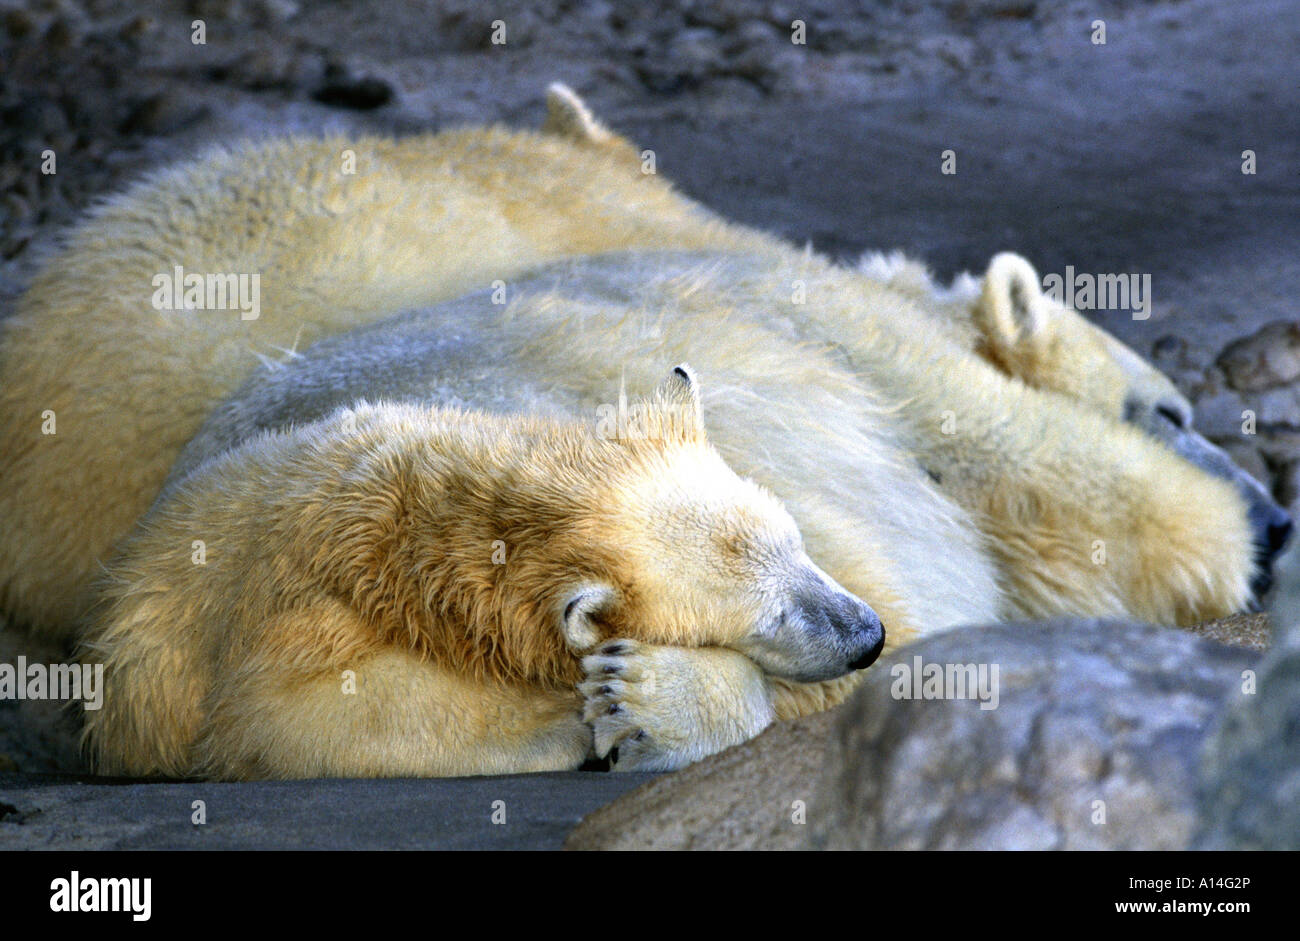 Eisbär Polarbär beast of prey Thalarctos maritimus Stock Photo